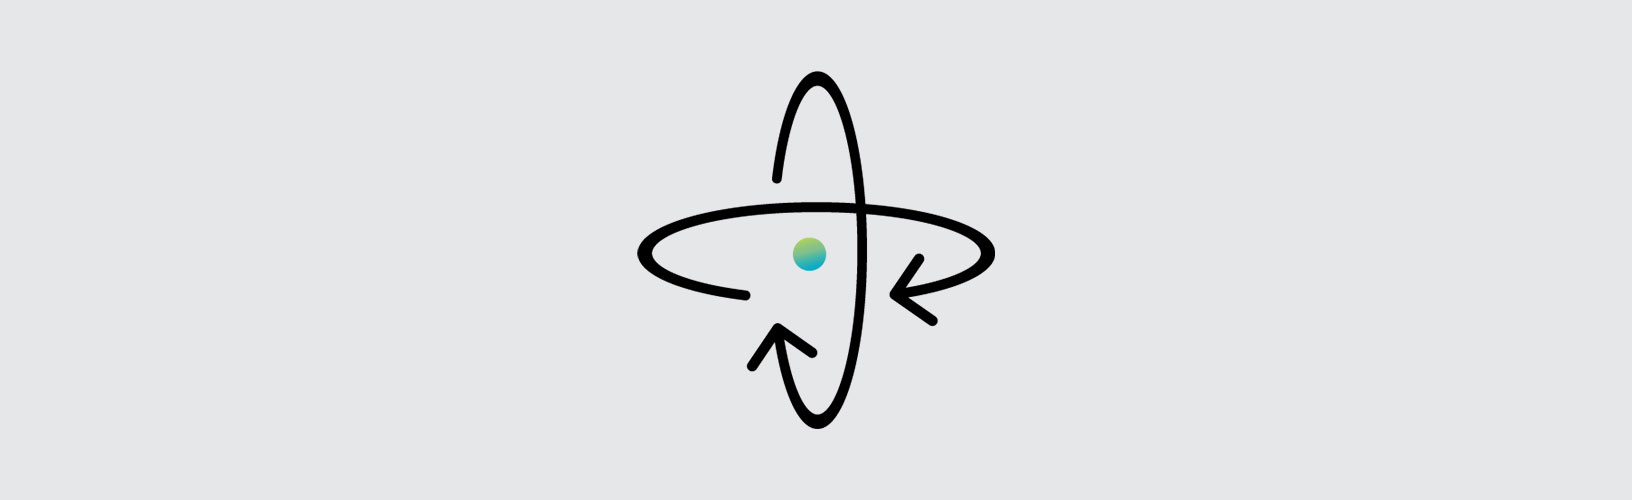 Icono de la marca Hexagon que representa un indicador de actitud